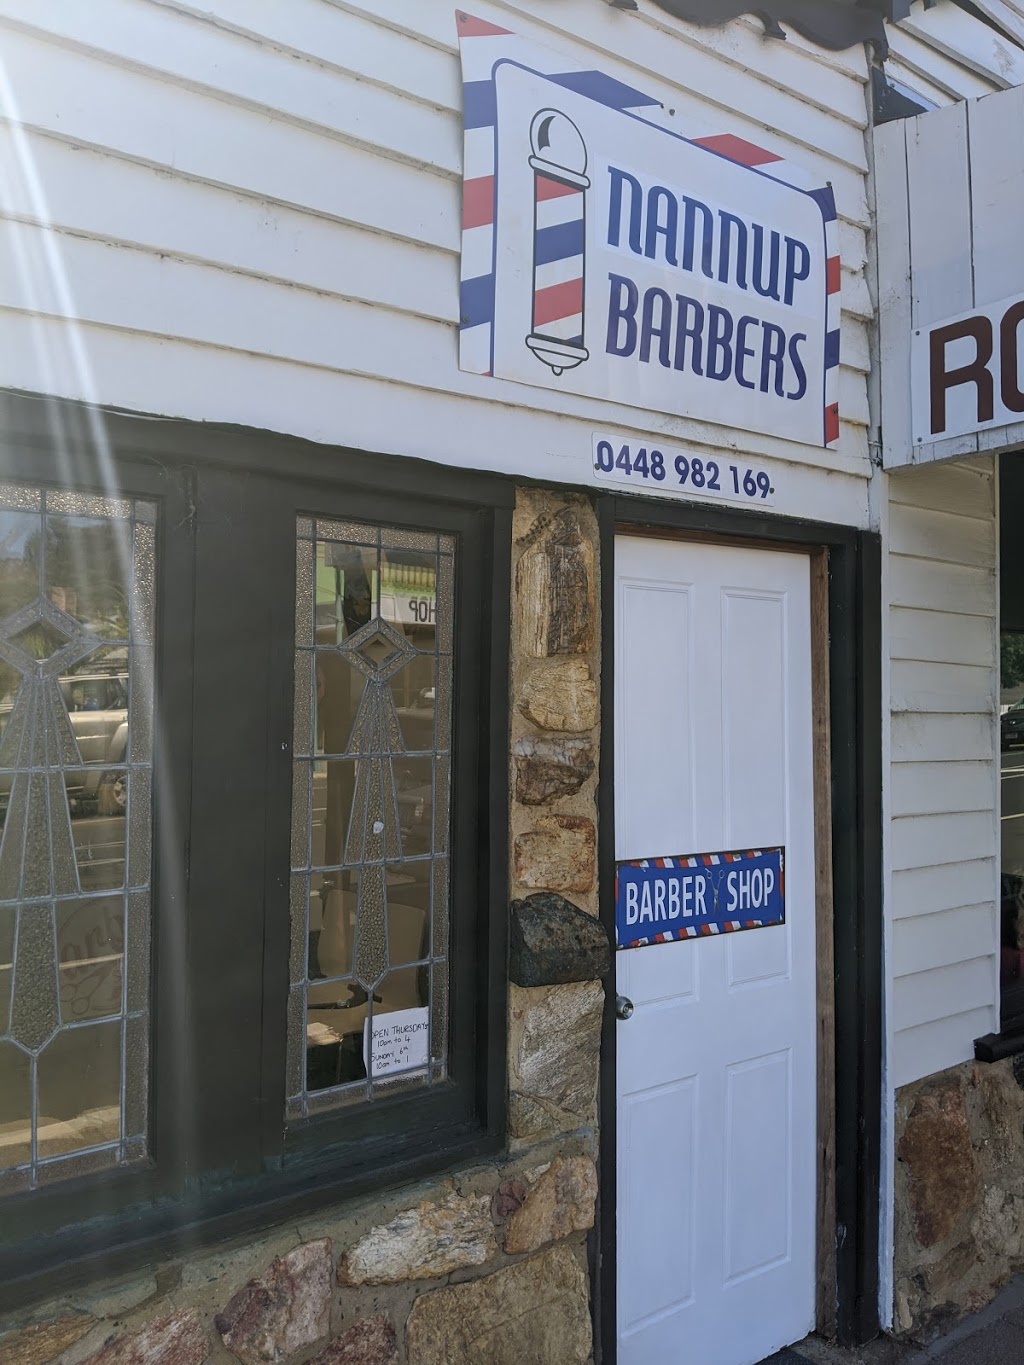 Nannup Barbers | hair care | 39 Warren Rd, Nannup WA 6275, Australia | 0448982169 OR +61 448 982 169